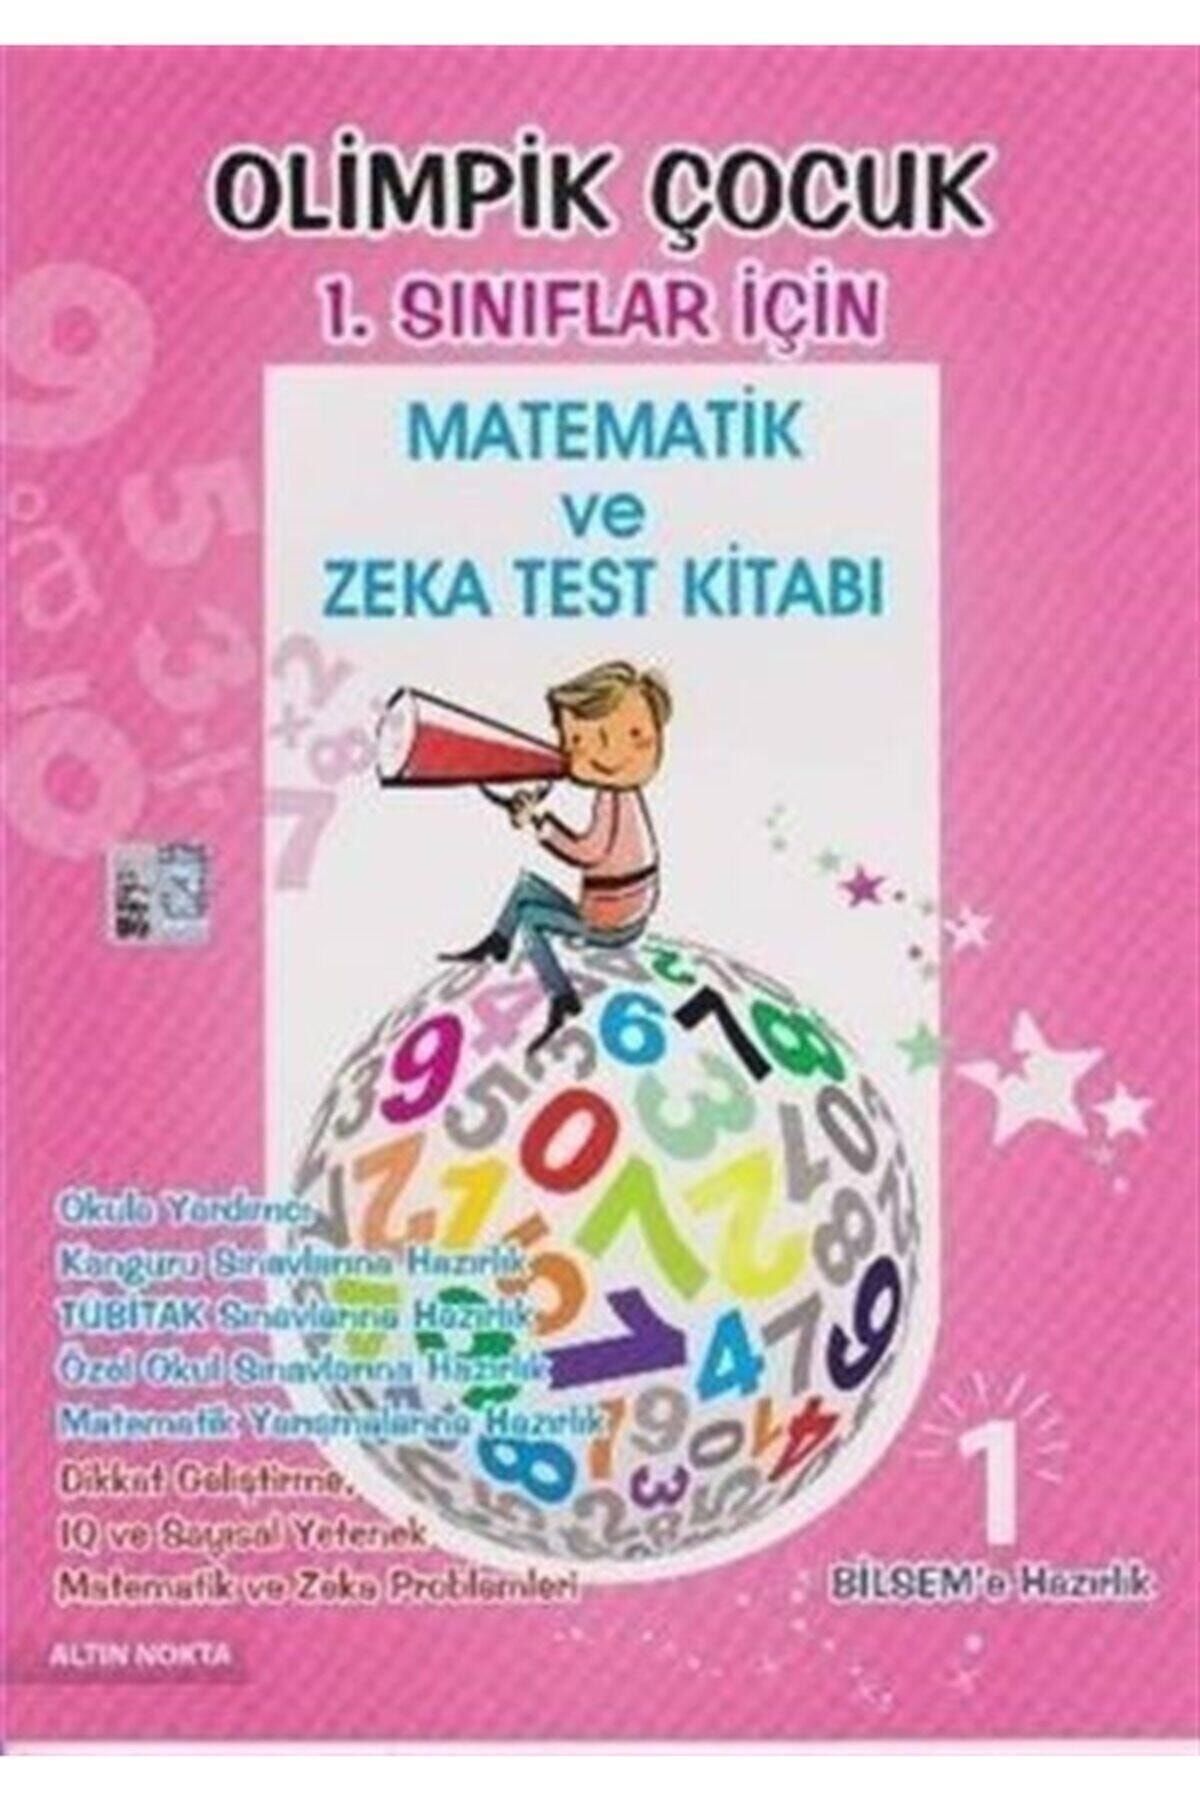 Altın Nokta Basım Yayın Yayınları Olimpik Çocuk 1. Sınıflar Için Matematik Ve Zeka Test Kitabı